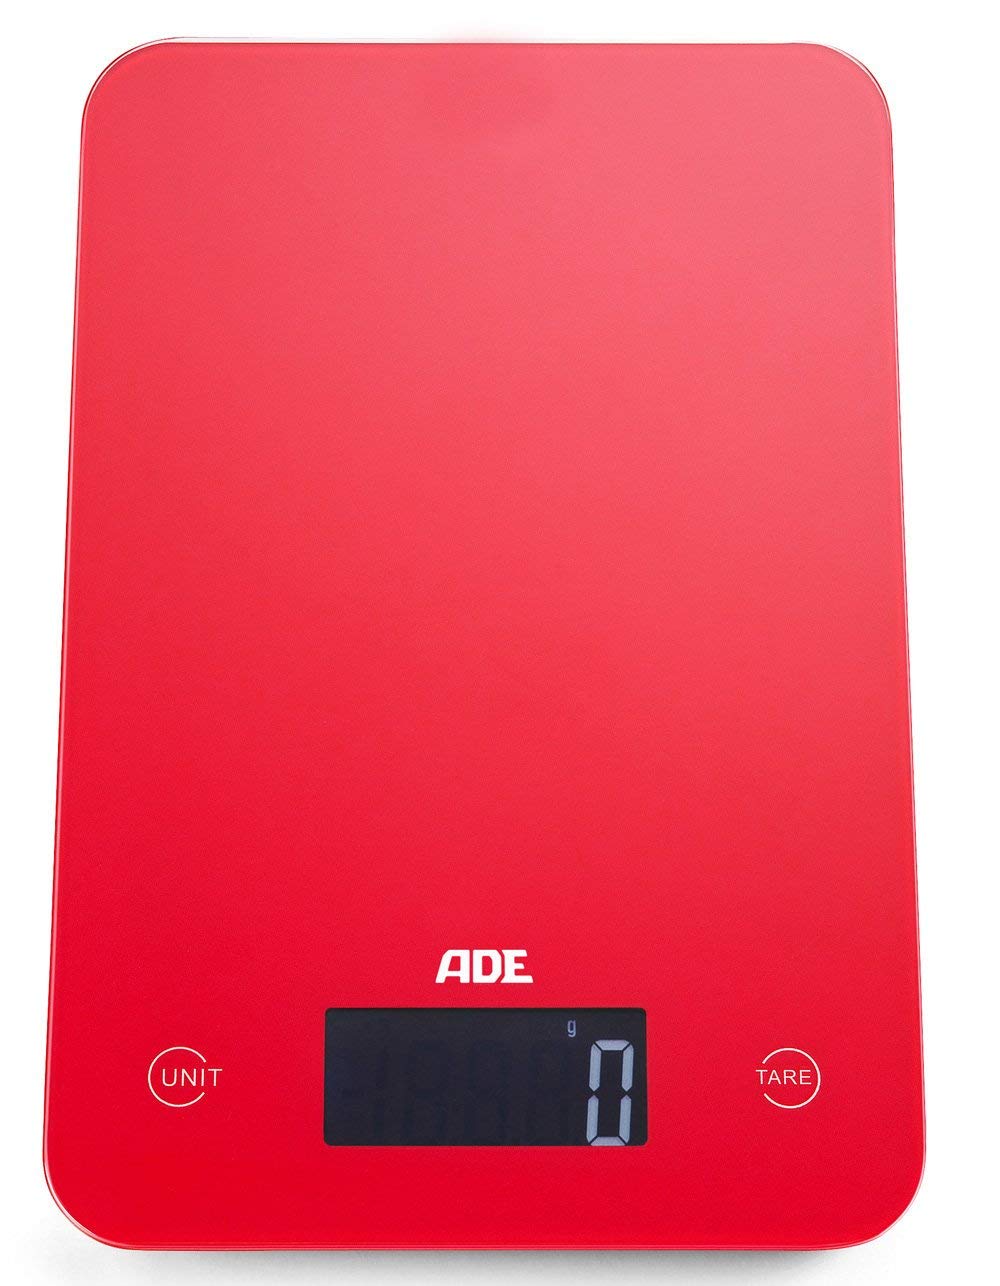 ADE Digitale Küchenwaage KE 927 Slim. Elektronische Waage im schlankem Design (nur 12 mm hoch). Präzise wiegen bis 5kg, Zuwiegefunktion Tara, Sensor-Touch. Auch für Flüssigkeiten. Inkl. Batterie. Rot